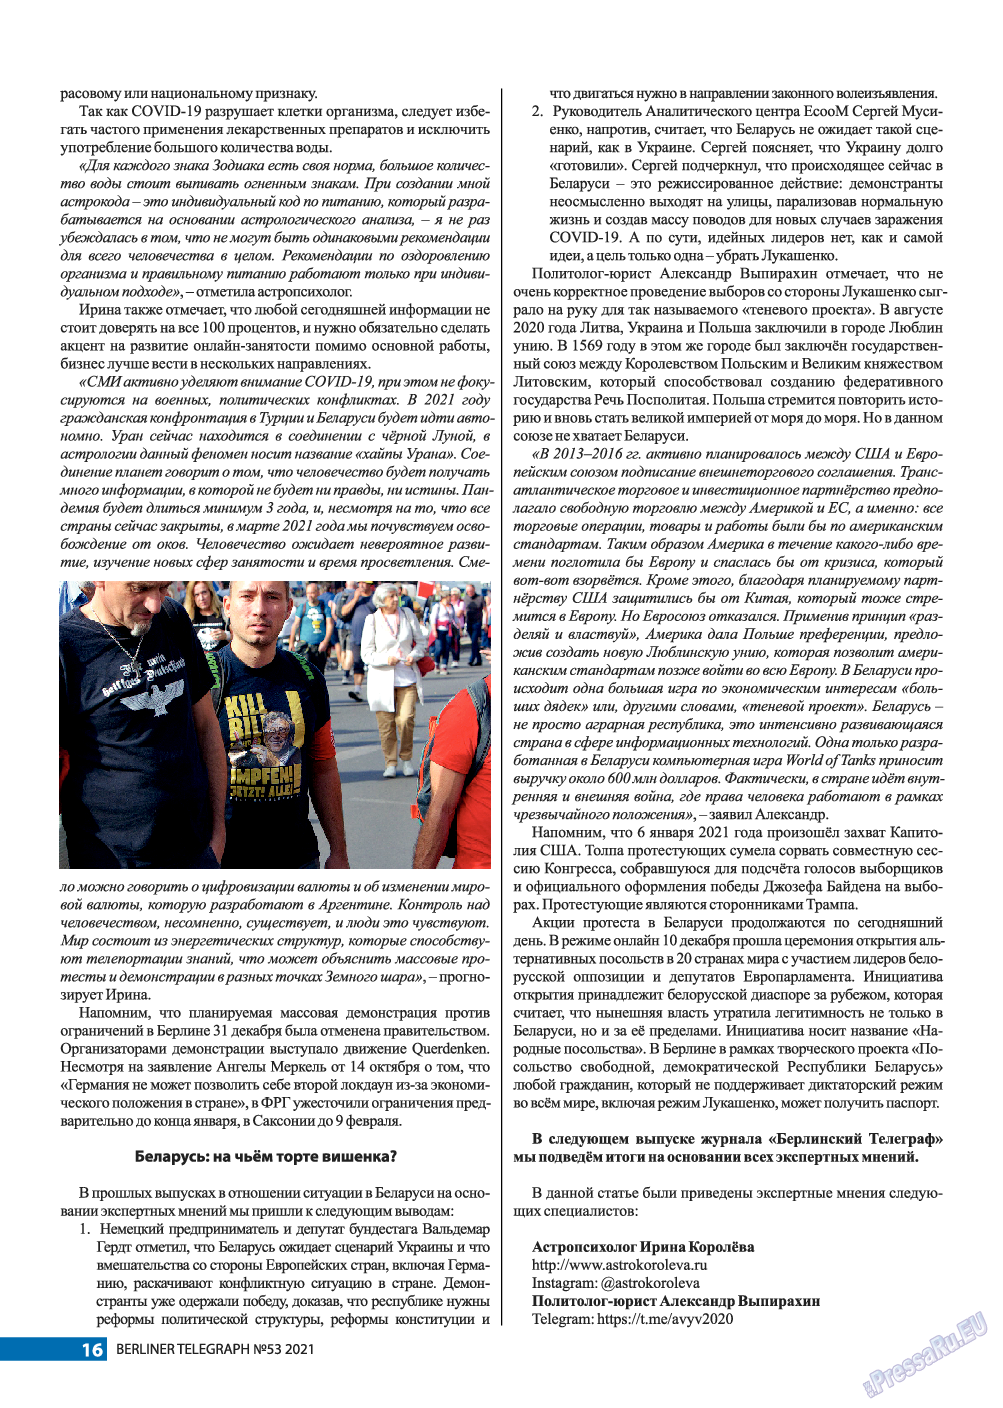 Берлинский телеграф, журнал. 2021 №53 стр.16